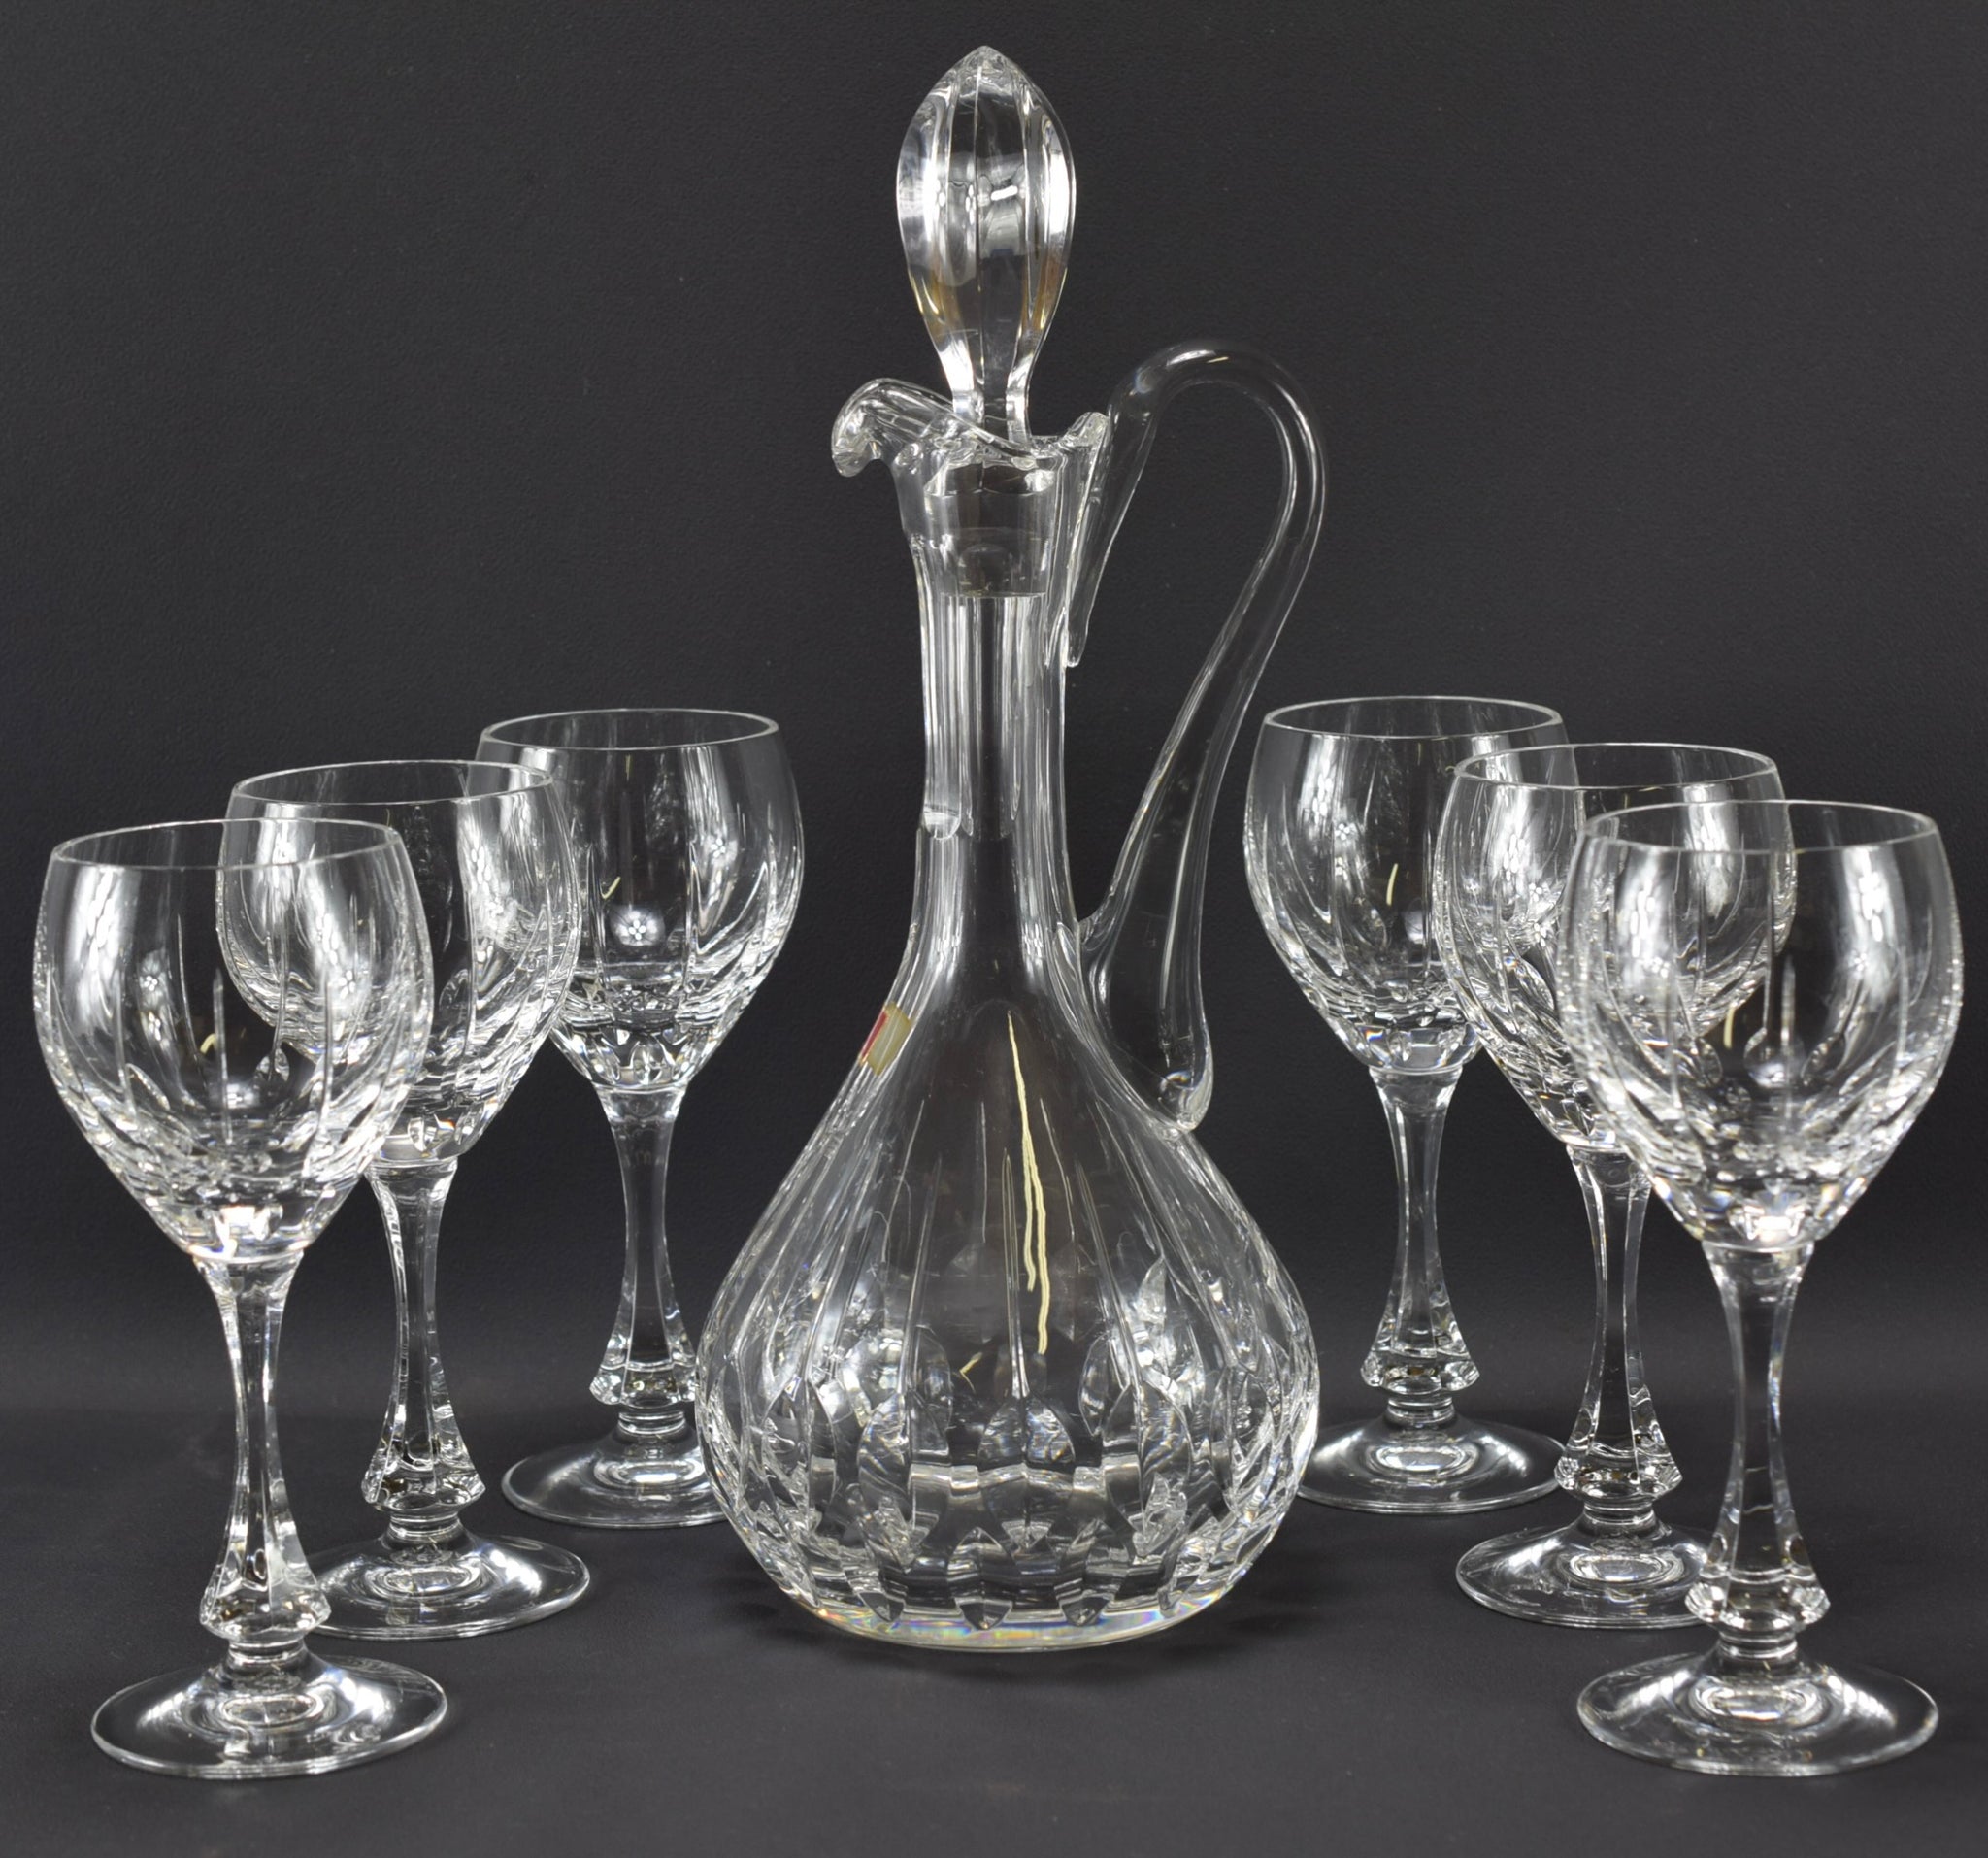 Vintage Baccarat Crystal Set of Wine Glasses and Carafe Decanter